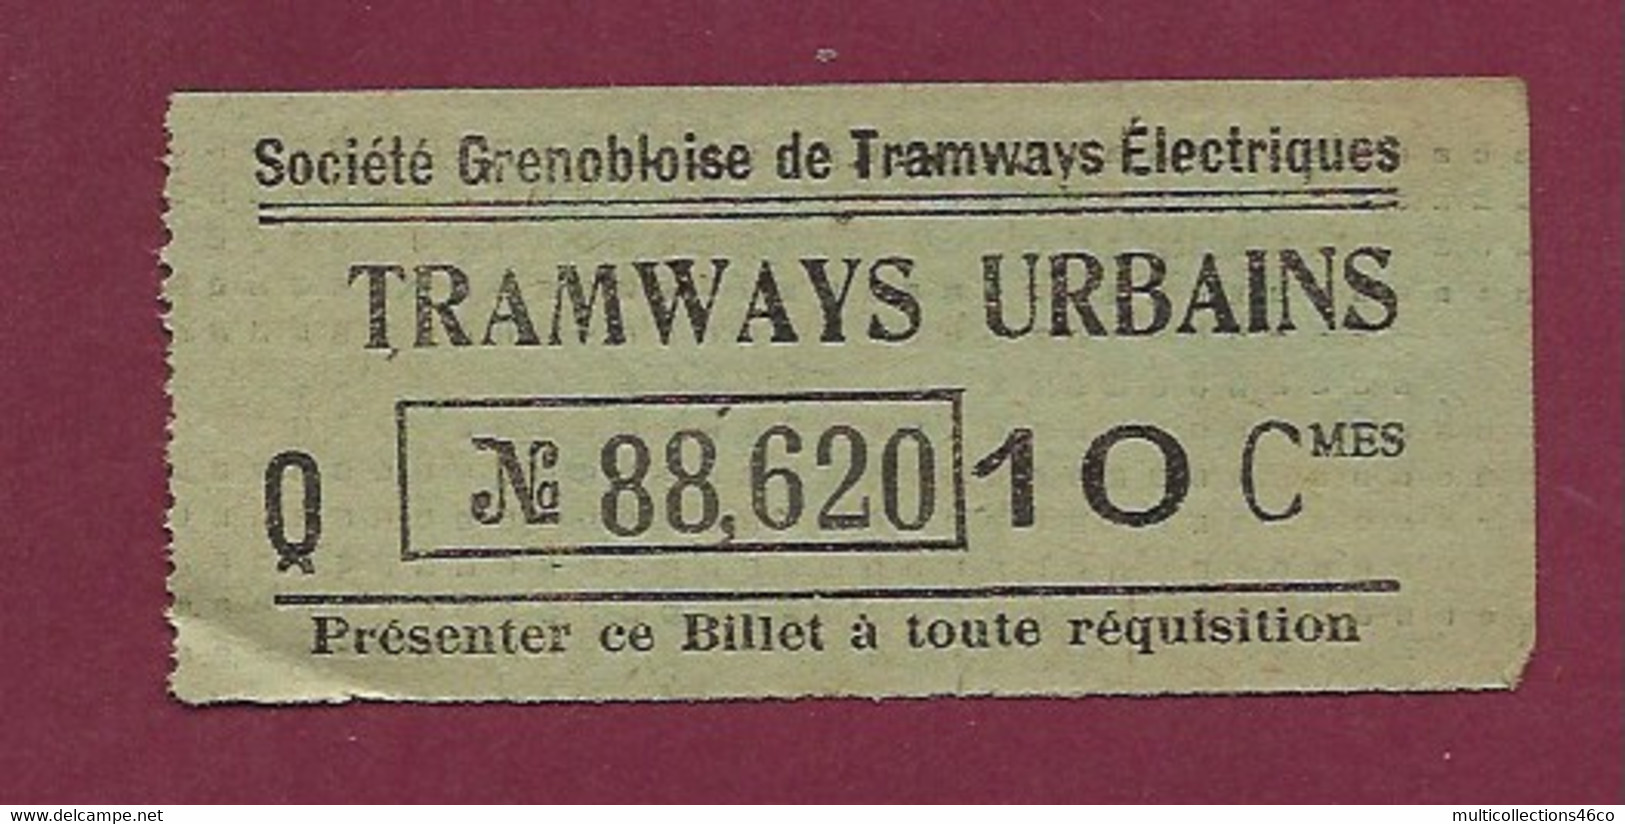 171020 - TICKET TRAMWAYS URBAINS Société Grenobloise De Tramways Electriques Q N°88,620 10 Cmes - Europe